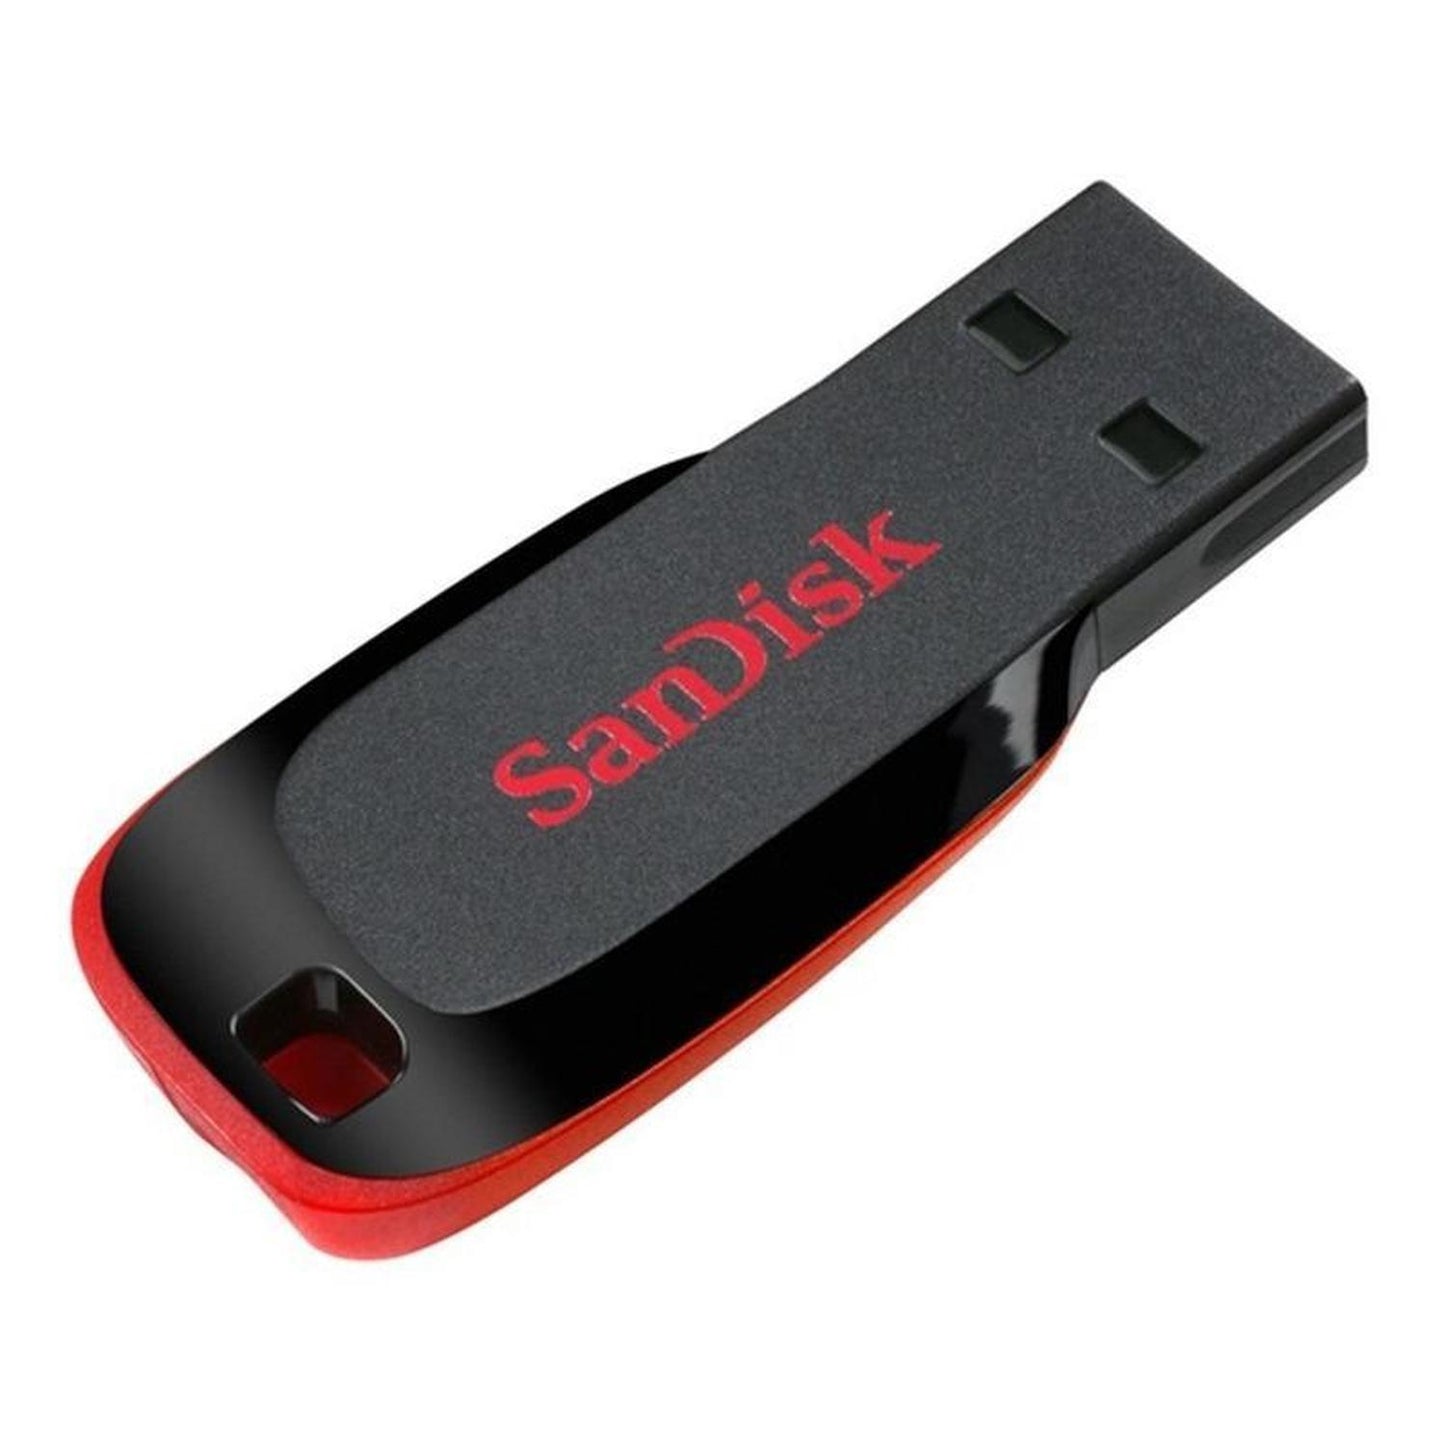 Paquete 5 Pzas Usb 16gb Sandisk Flash 2.0 Sdcz50-016g-b35